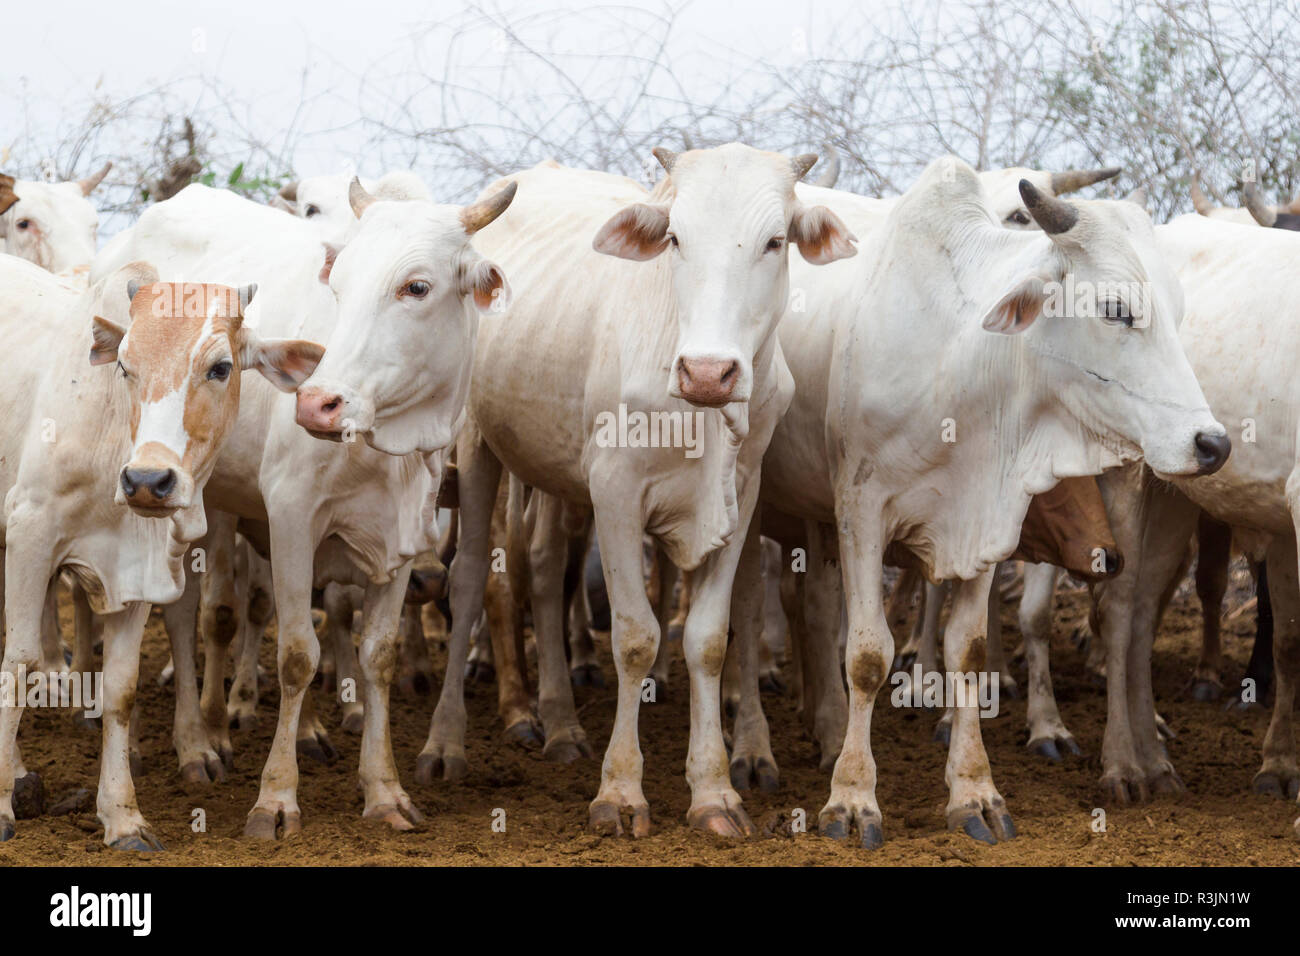 L'Afrique, l'Ethiopie, le sud de la vallée de l'Omo, Tribu Nyangatom. Photo d'un troupeau de bovins de l'Nyangtom. Banque D'Images